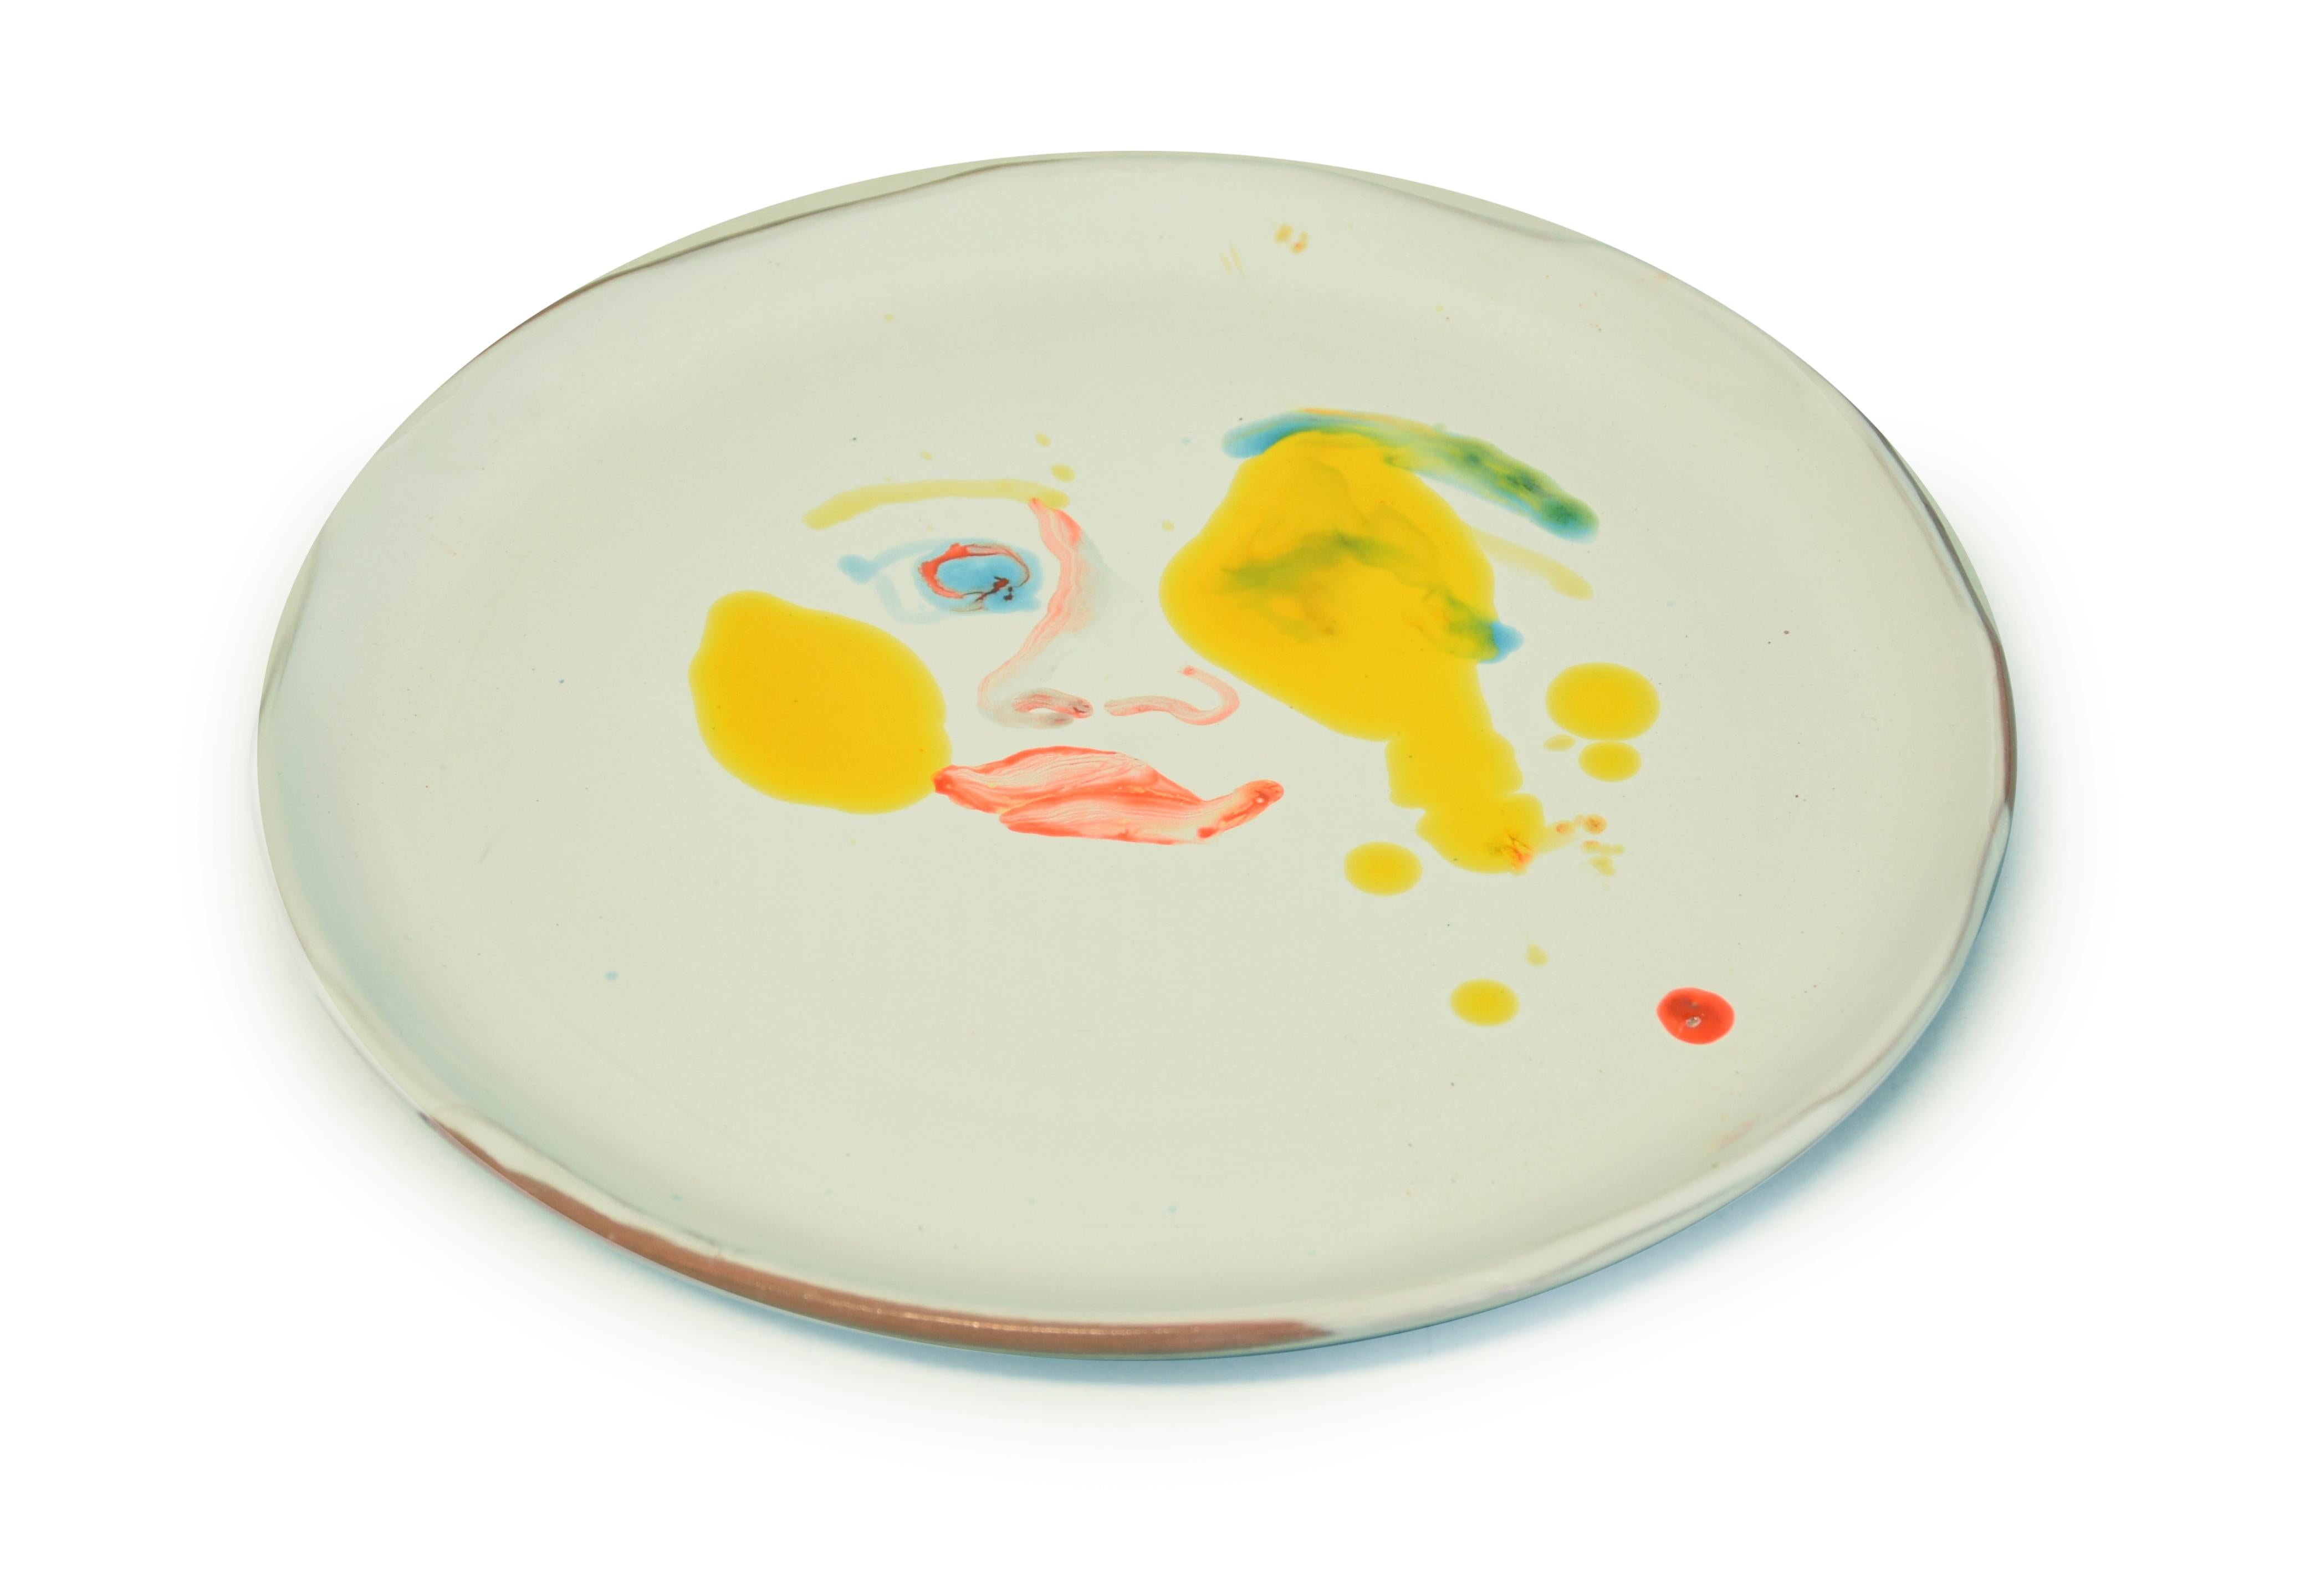 Yellow Stains - Original  Hand-made Flat Ceramic Dish by A. Kurakina - 2019 - Art by Anastasia Kurakina